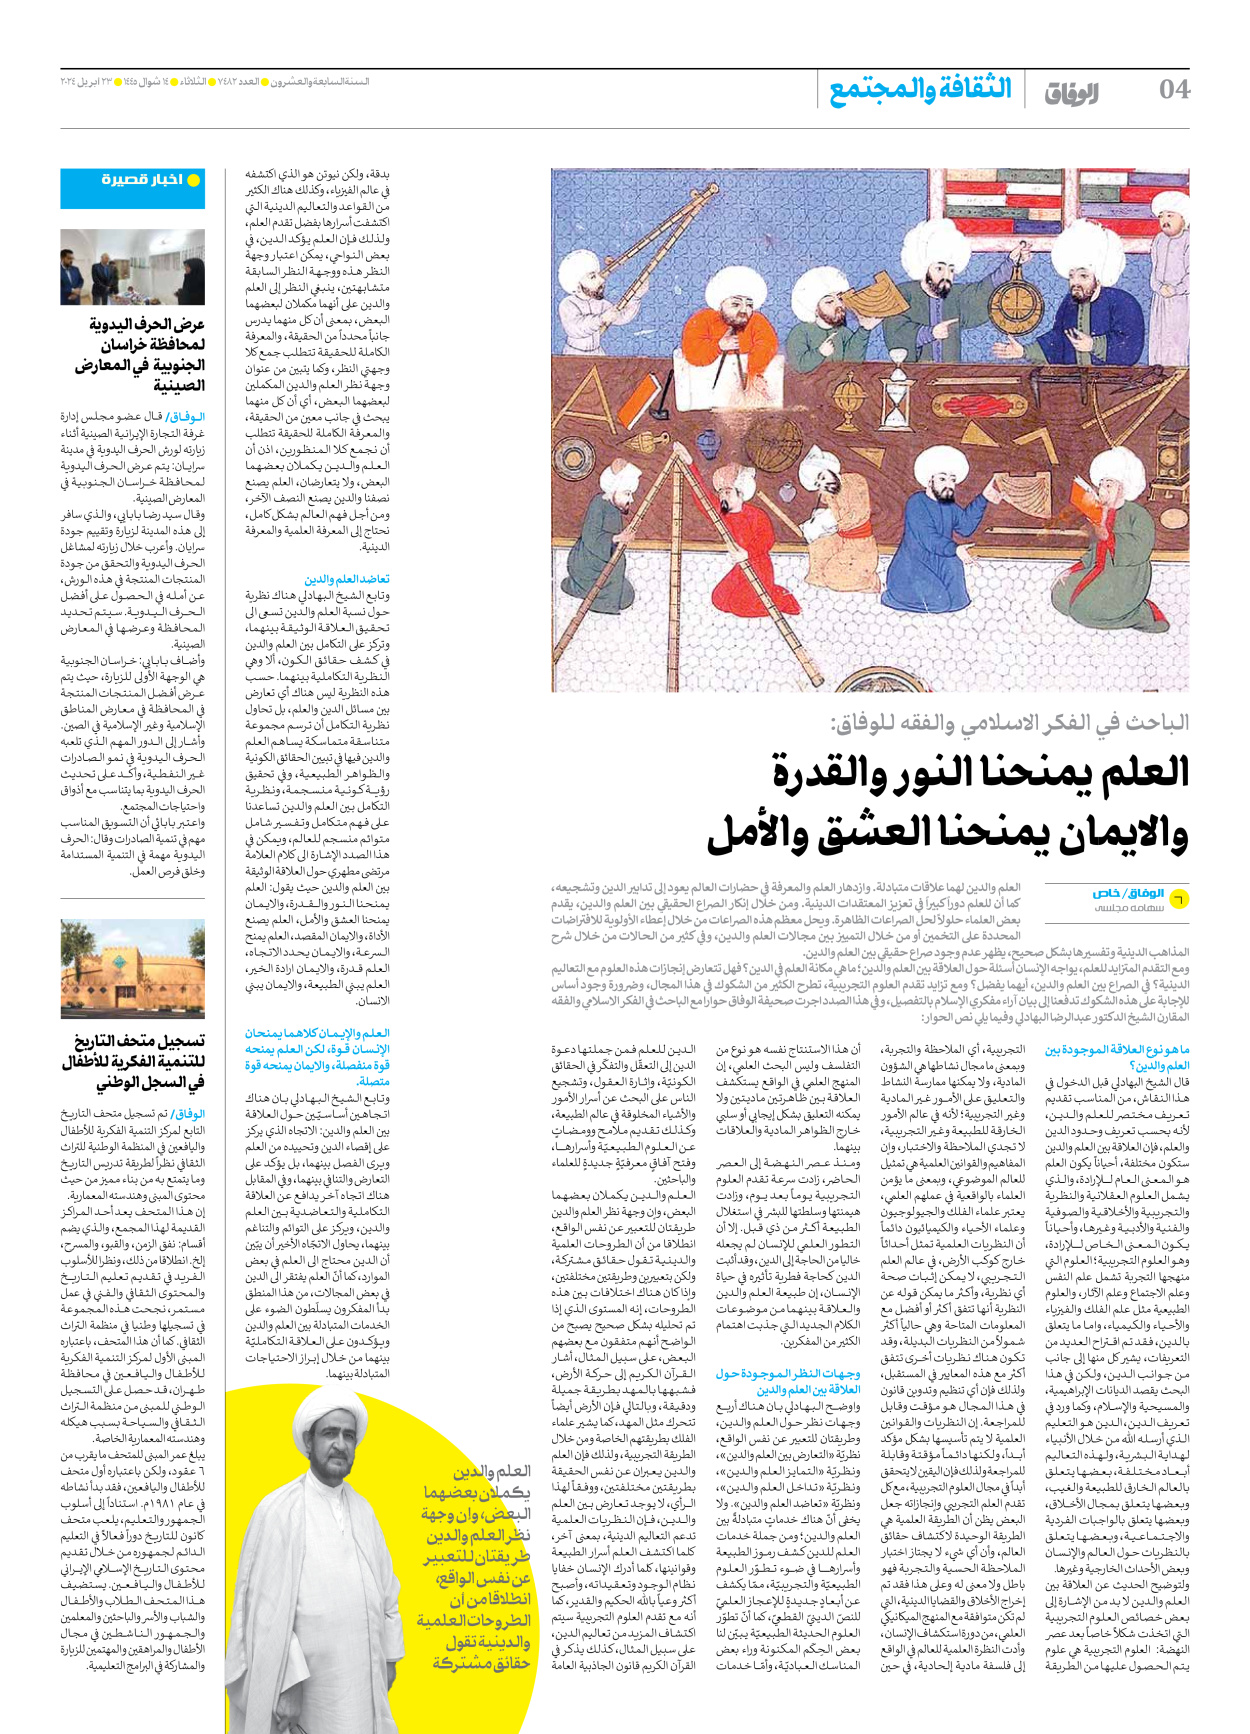 صحیفة ایران الدولیة الوفاق - العدد سبعة آلاف وأربعمائة واثنان وثمانون - ٢٣ أبريل ٢٠٢٤ - الصفحة ٤